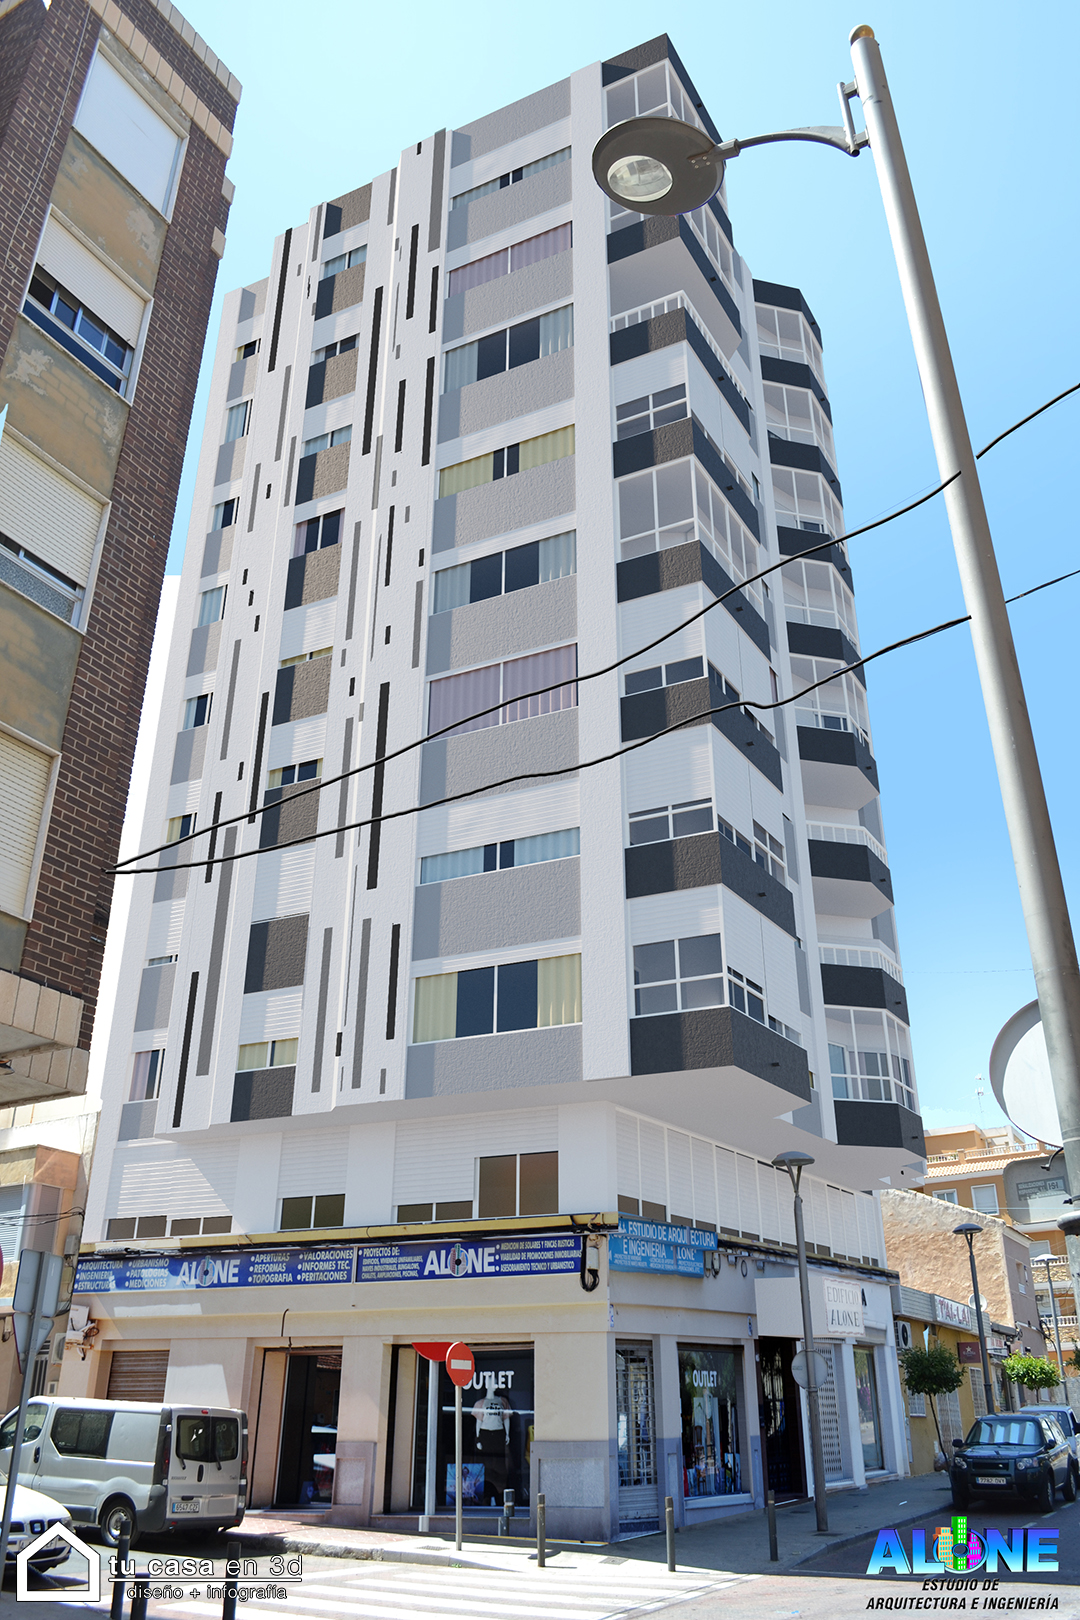 Rehabilitación de fachada edificio Alone Guardamar. Monocapa blanco y gris